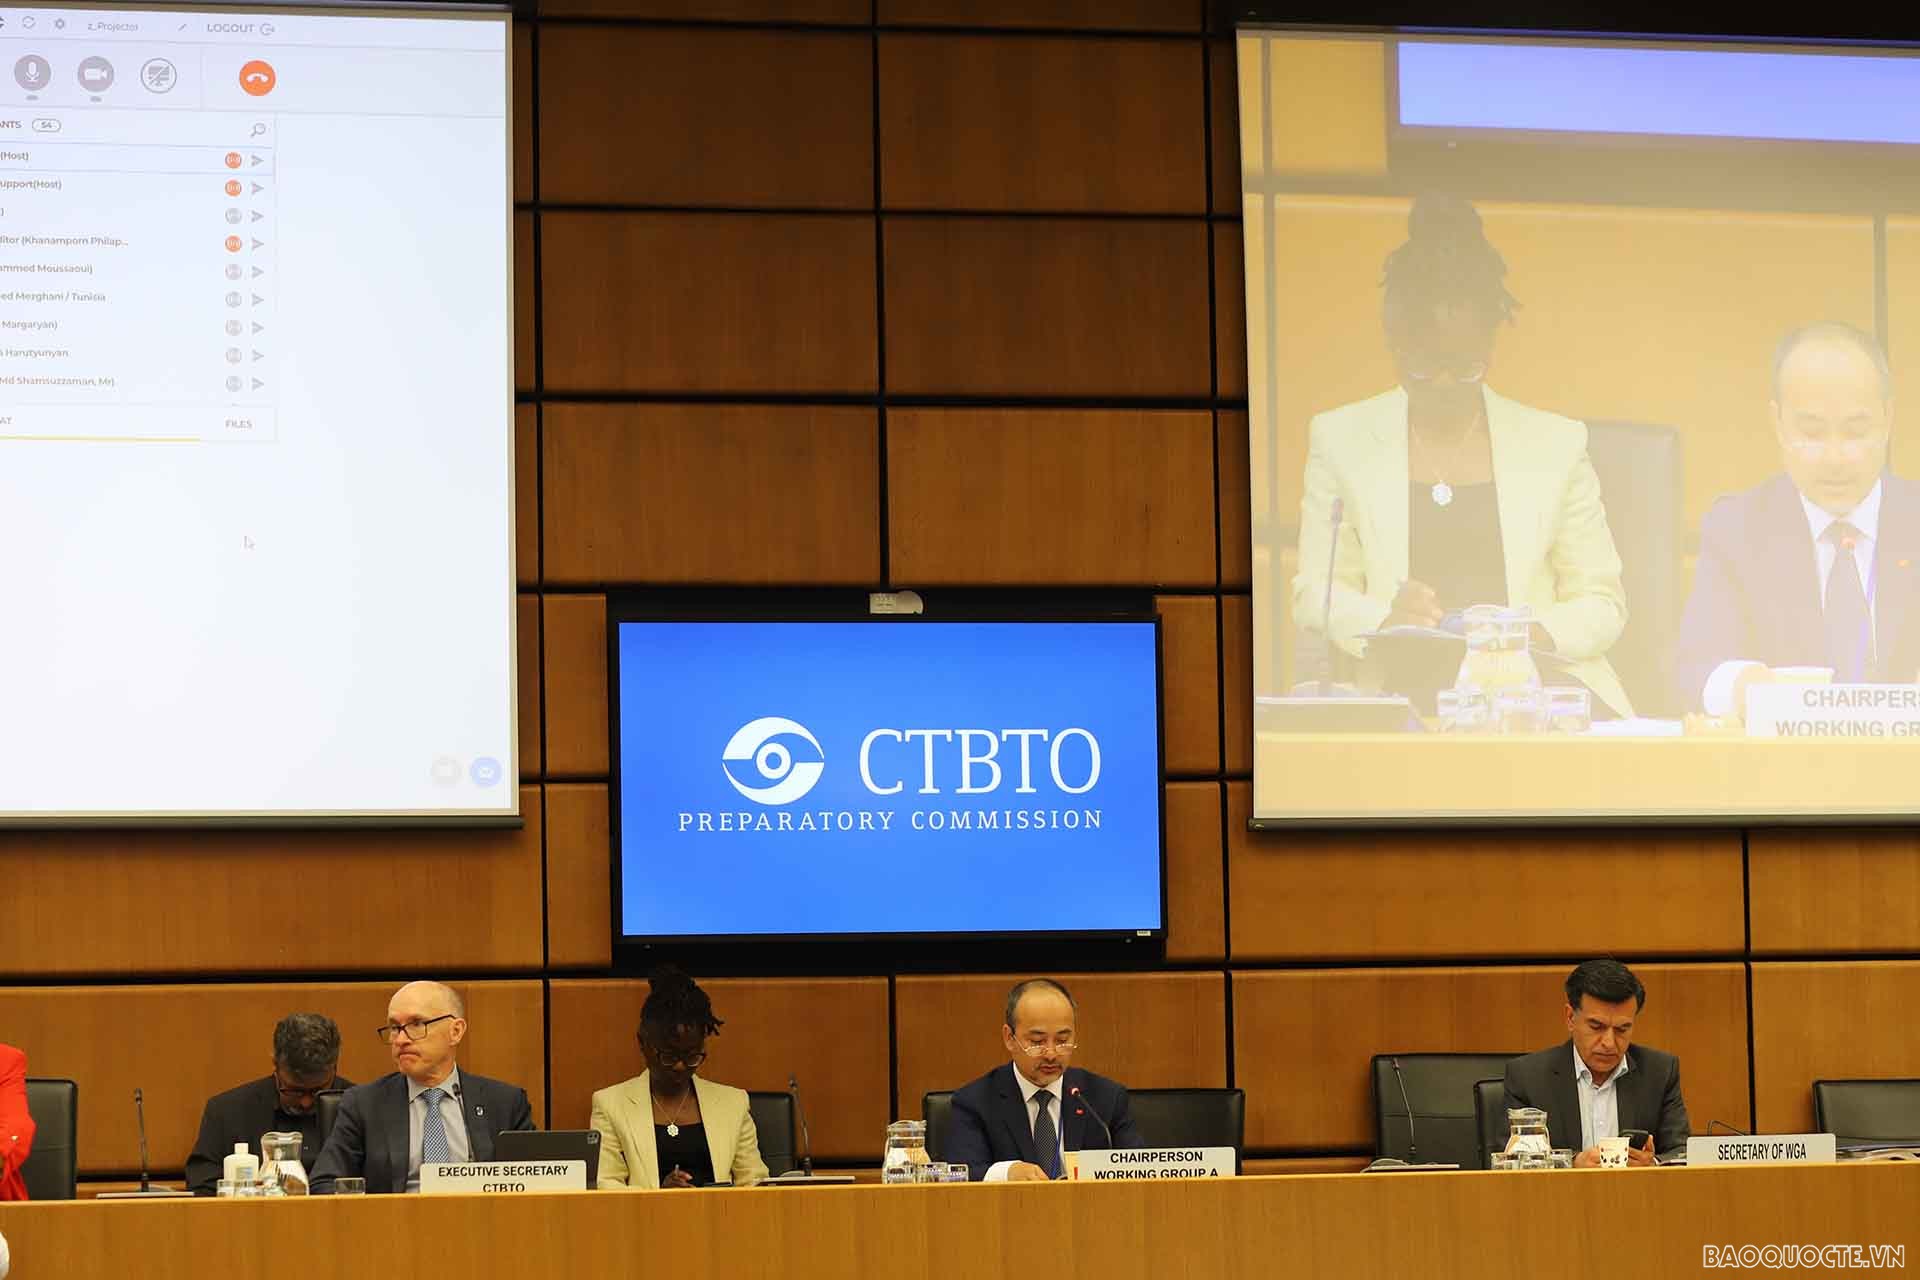 Đại sứ Nguyễn Trung Kiên, Đại diện thường trực Việt Nam tại CTBTO, Chủ tịch Nhóm Công tác A đã chủ trì Phiên họp.